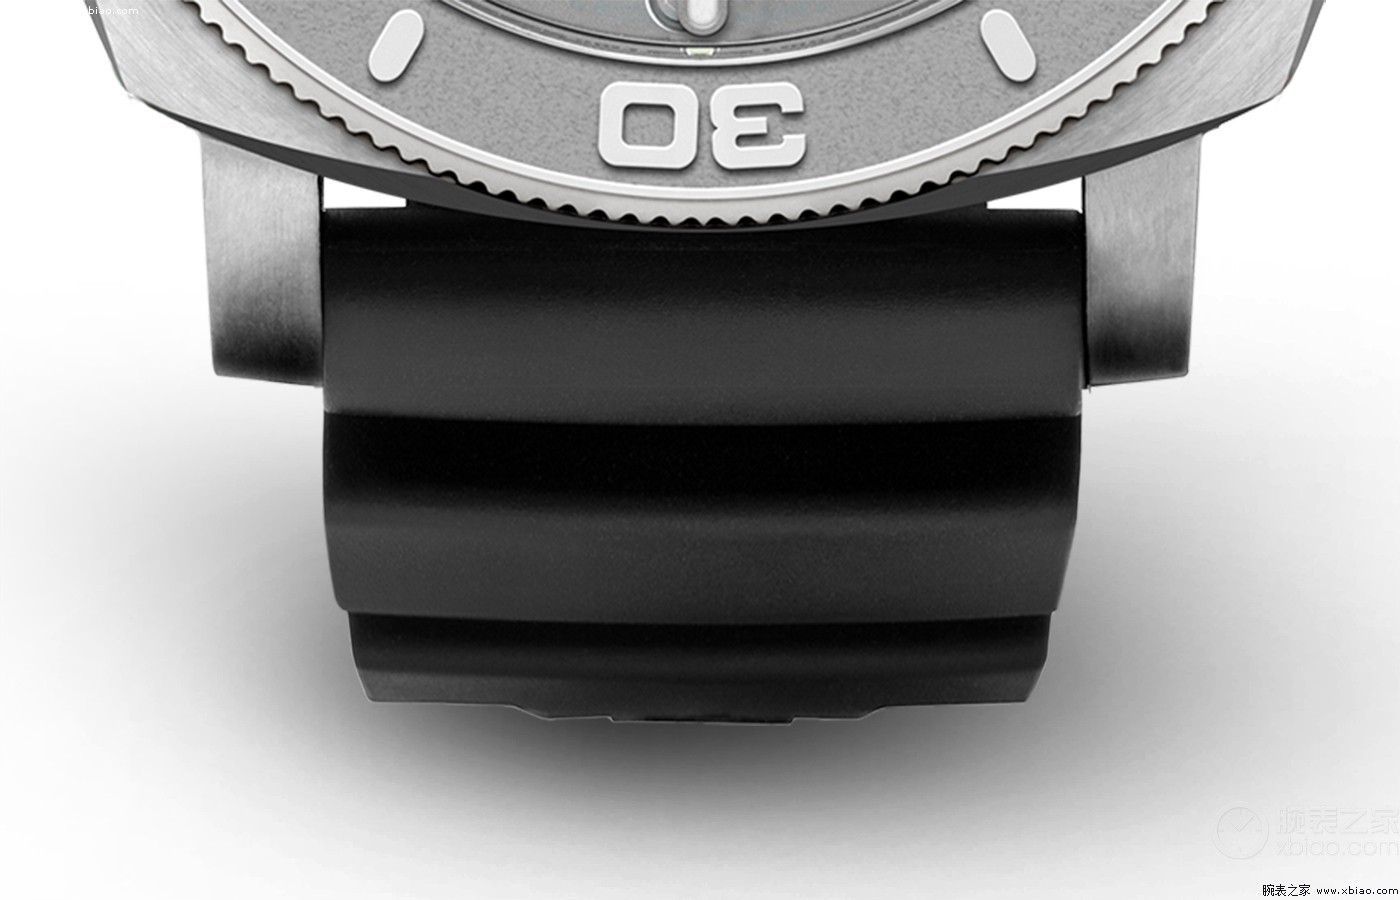 名俱扬]繁杂作用与环保材质 品评沛纳海纪念版SUBMERSIBLE背刺系列产品腕表